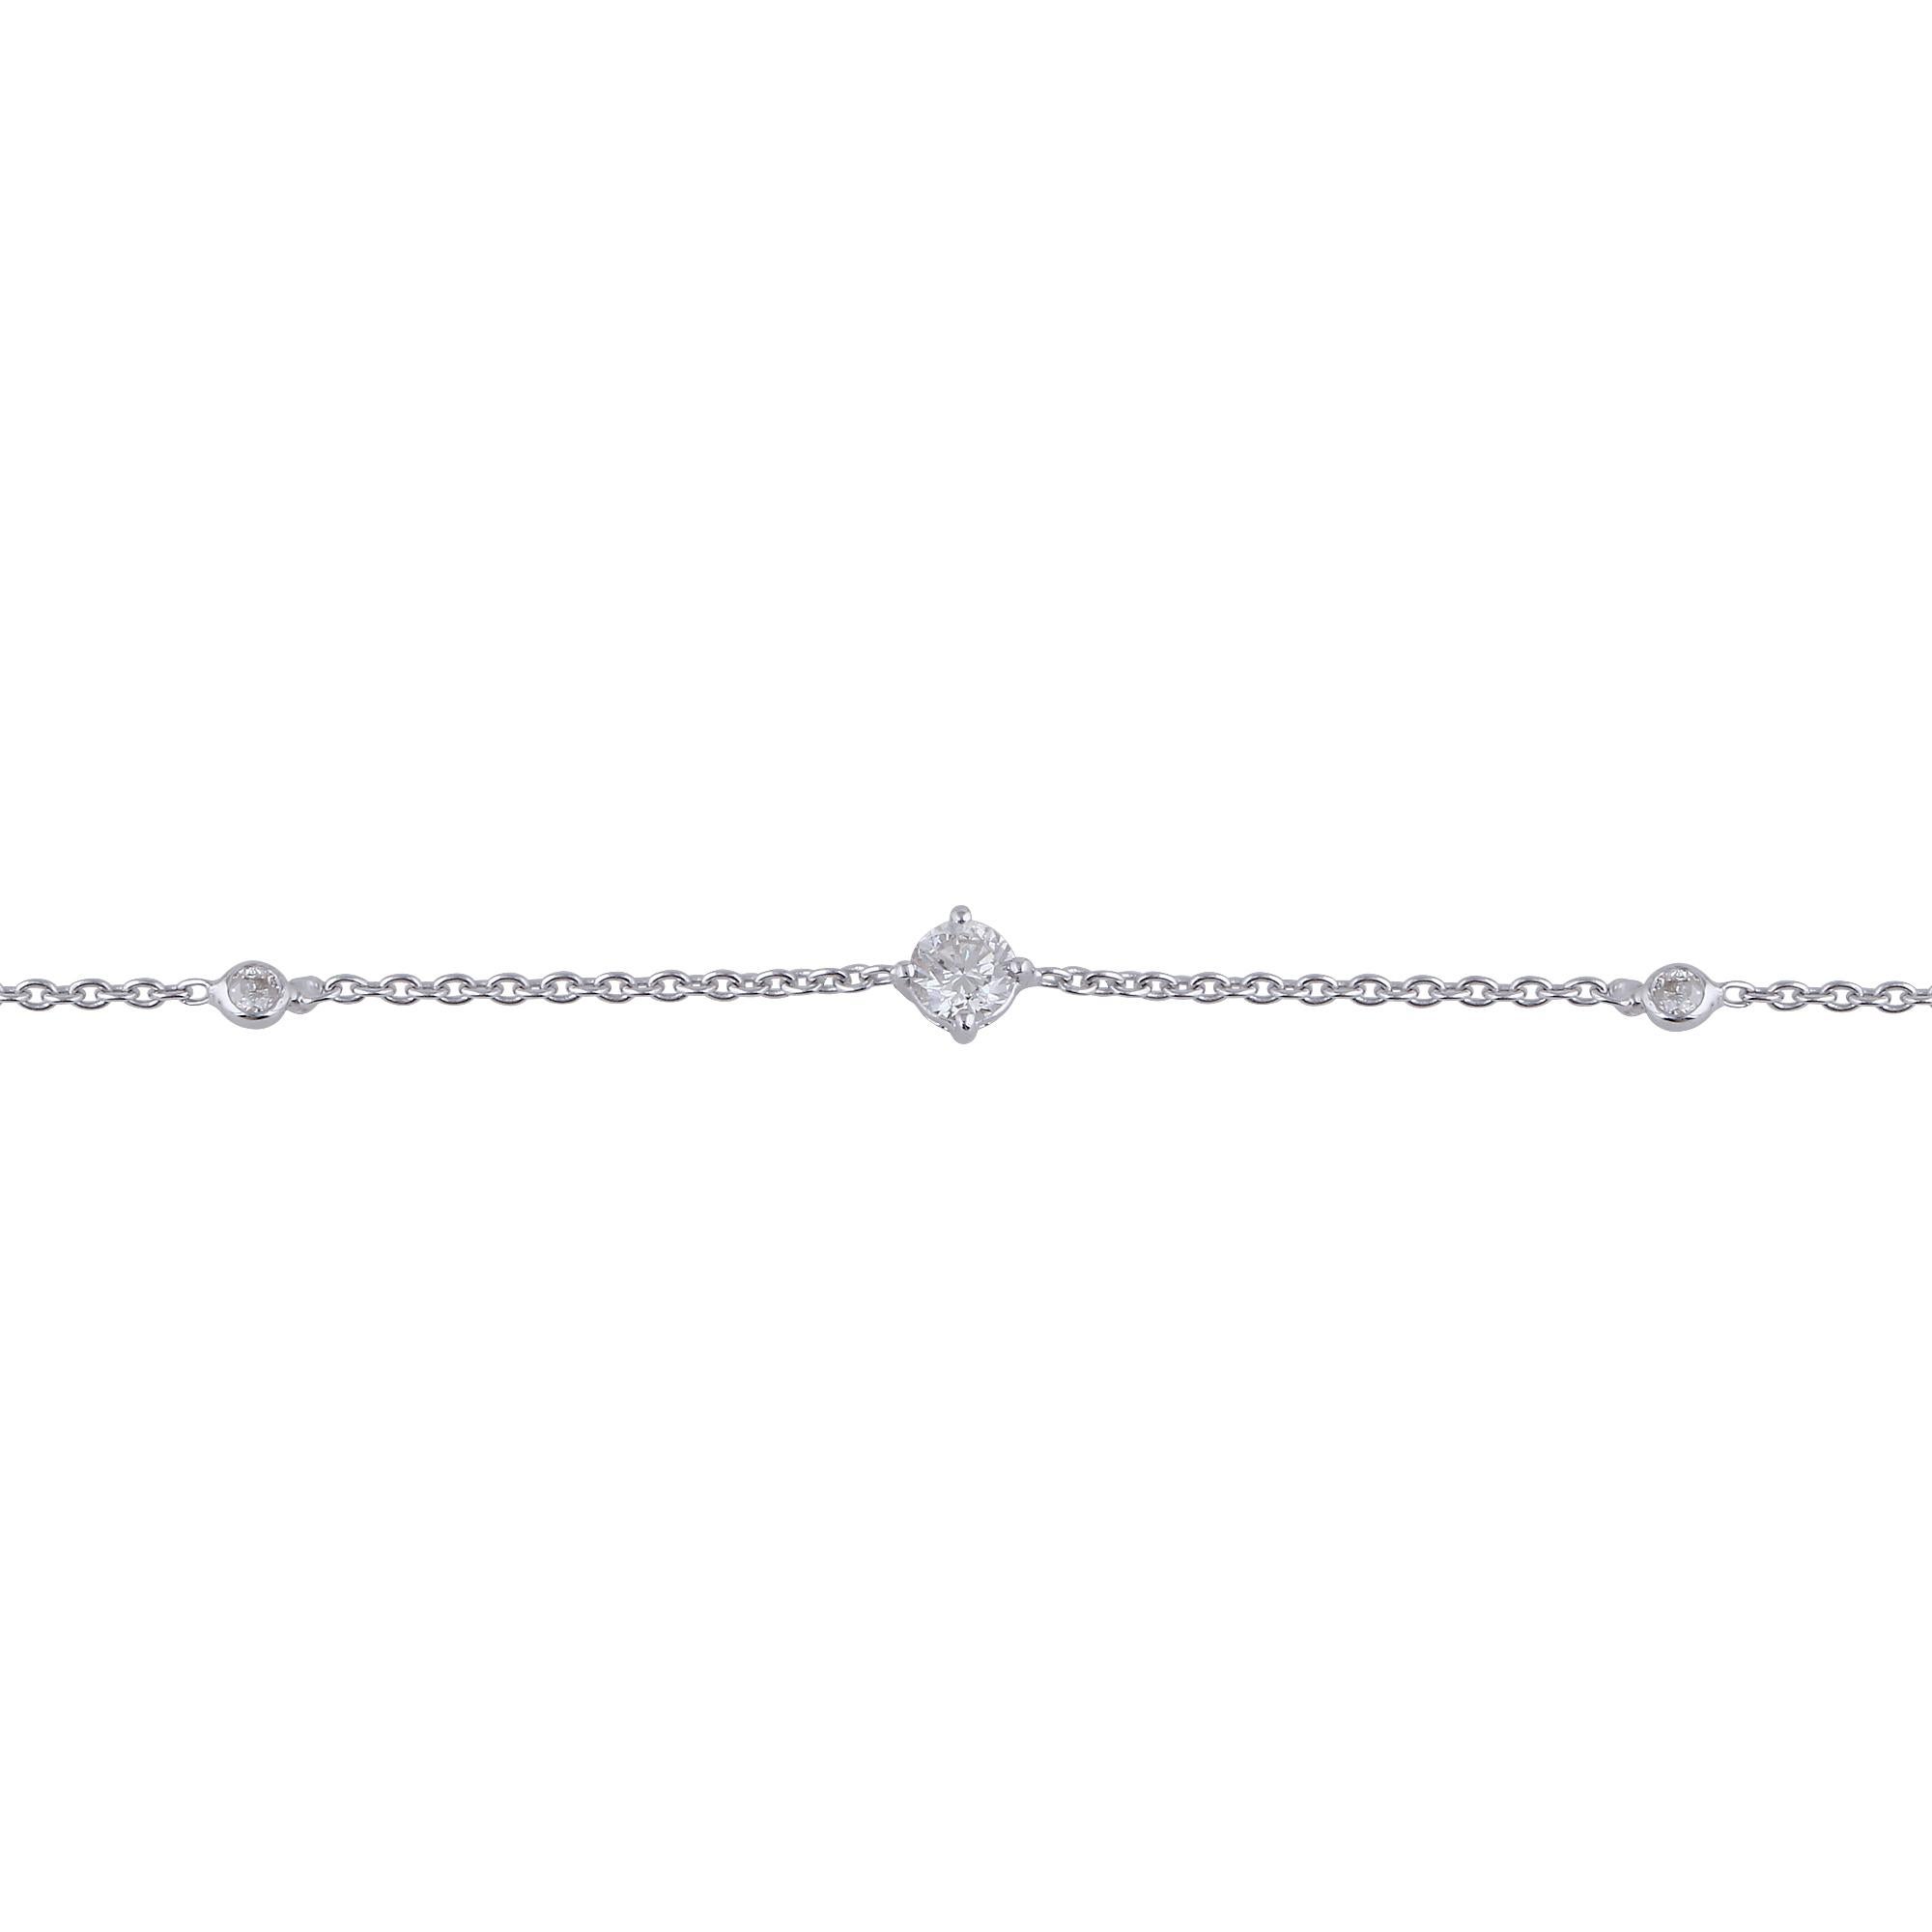 Code d'article :- SEBR-4038
Poids brut :- 1.78 gm
Or blanc massif 18k Poids :- 1.72 gm
Poids du diamant naturel :- 0.28 Ct. ( DIAMANT MOYEN DE PURETÉ SI1-SI2 ET DE COULEUR H-I )
Taille du bracelet :- 7 pouces de long

✦